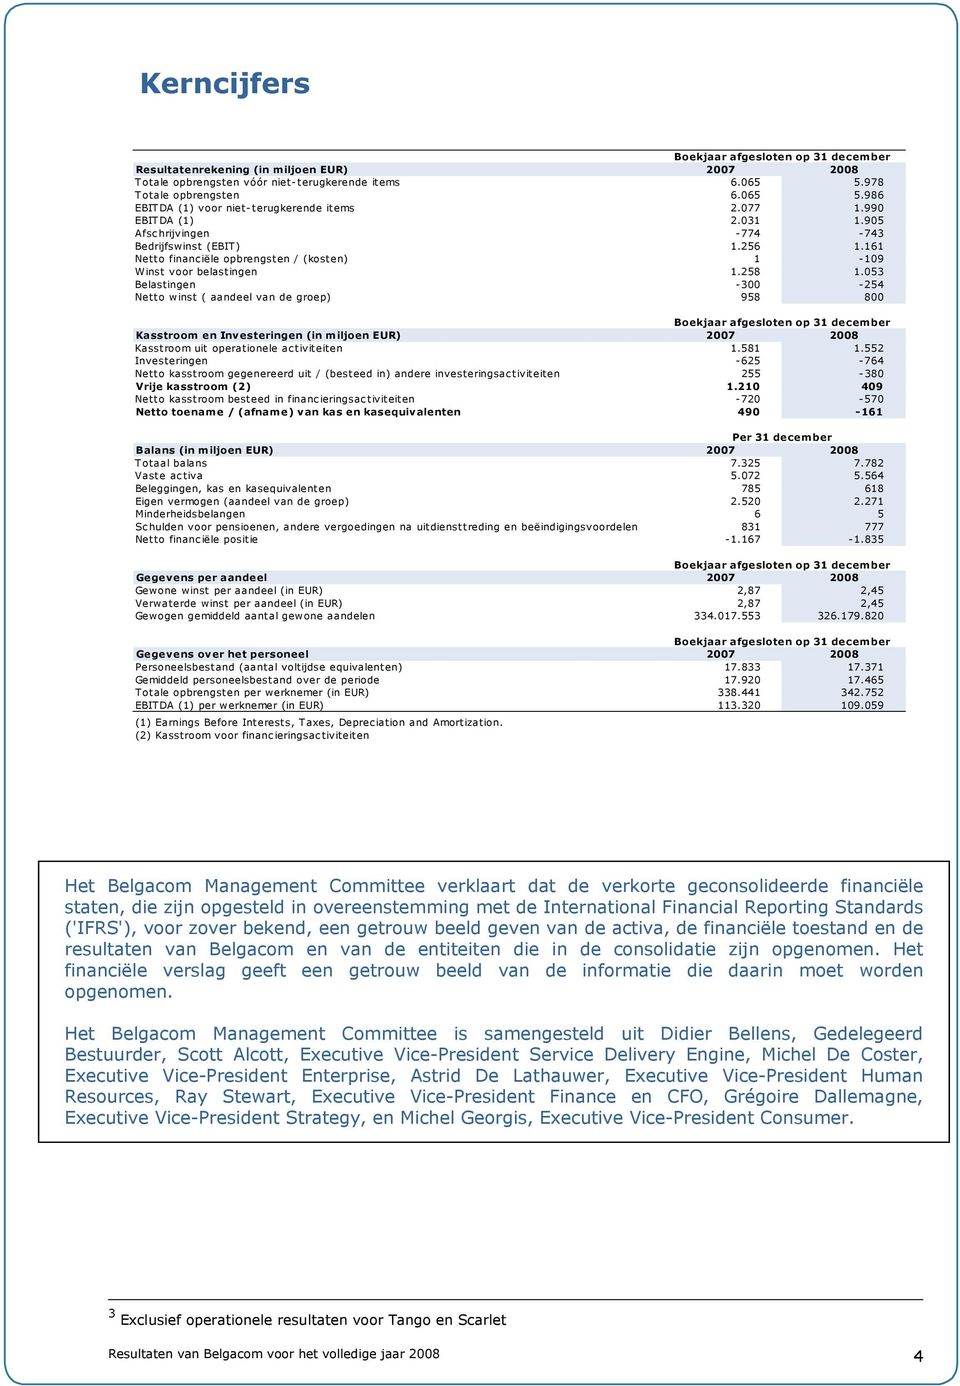 053 Belastingen -300-254 Netto winst ( aandeel van de groep) 958 800 Boekjaar afgesloten op 31 december Kasstroom en Investeringen (in miljoen EUR) 2007 2008 Kasstroom uit operationele activiteiten 1.